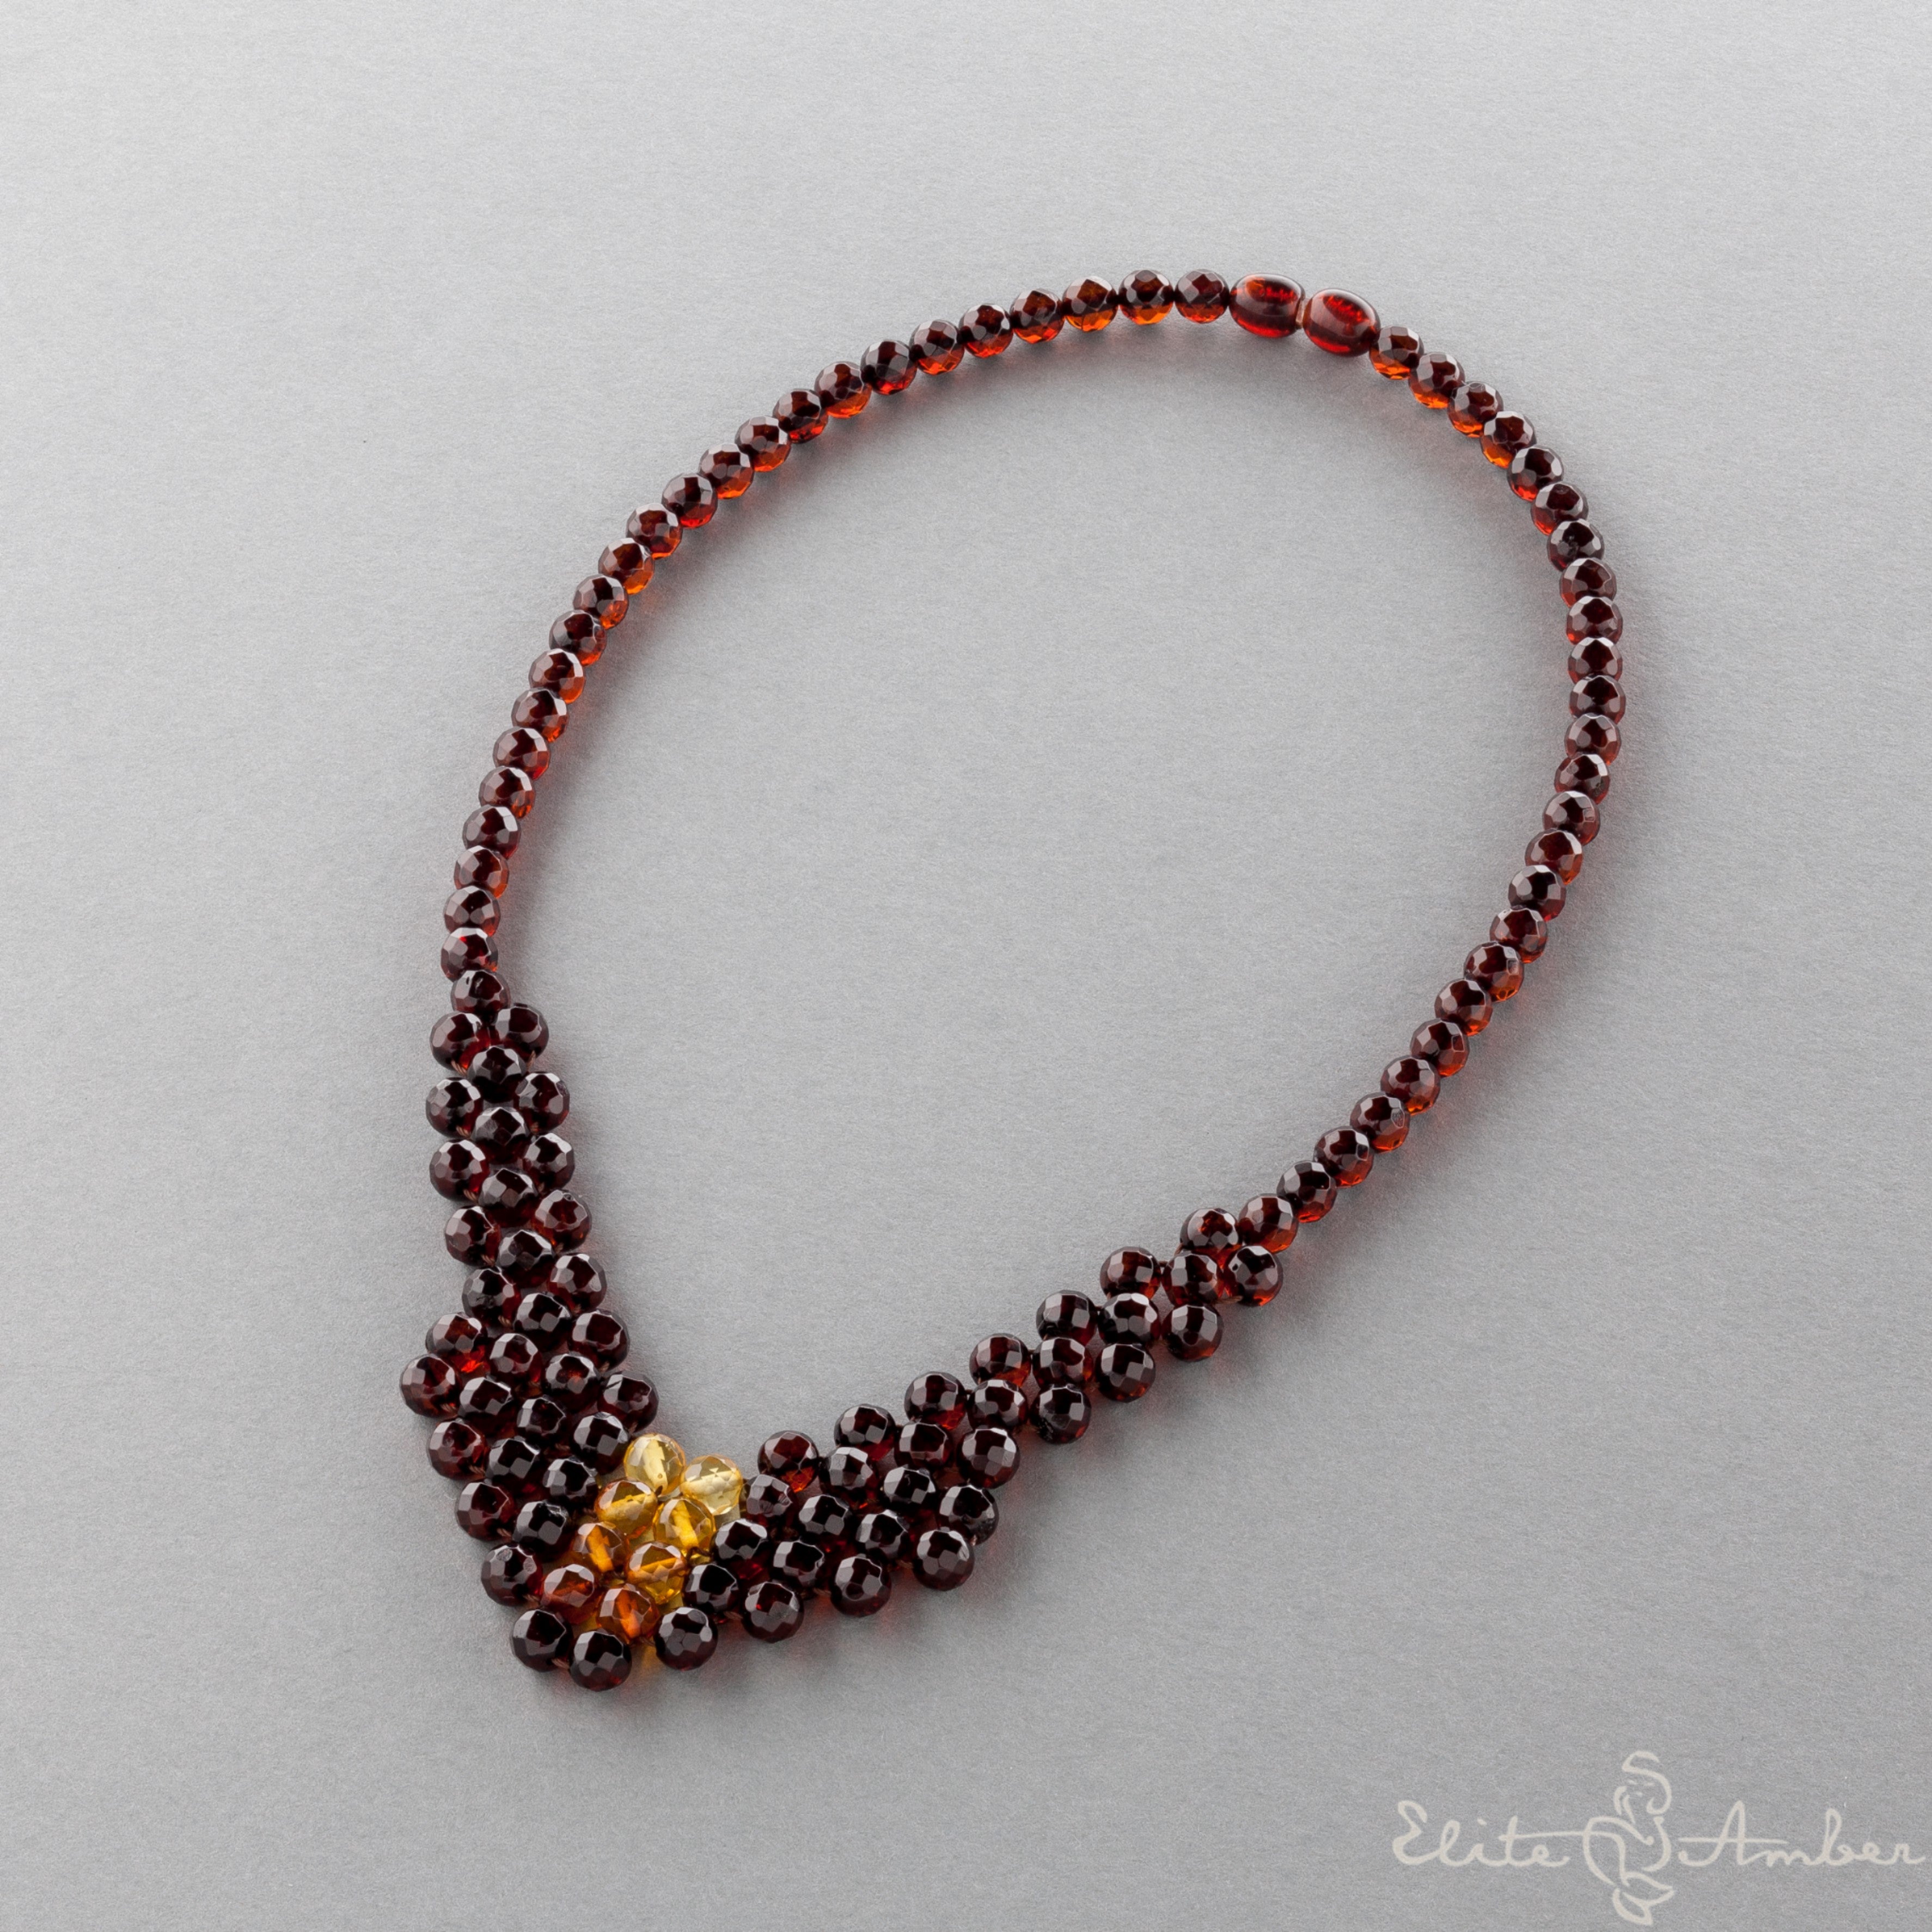 Amber necklace "Princess sun droplet"